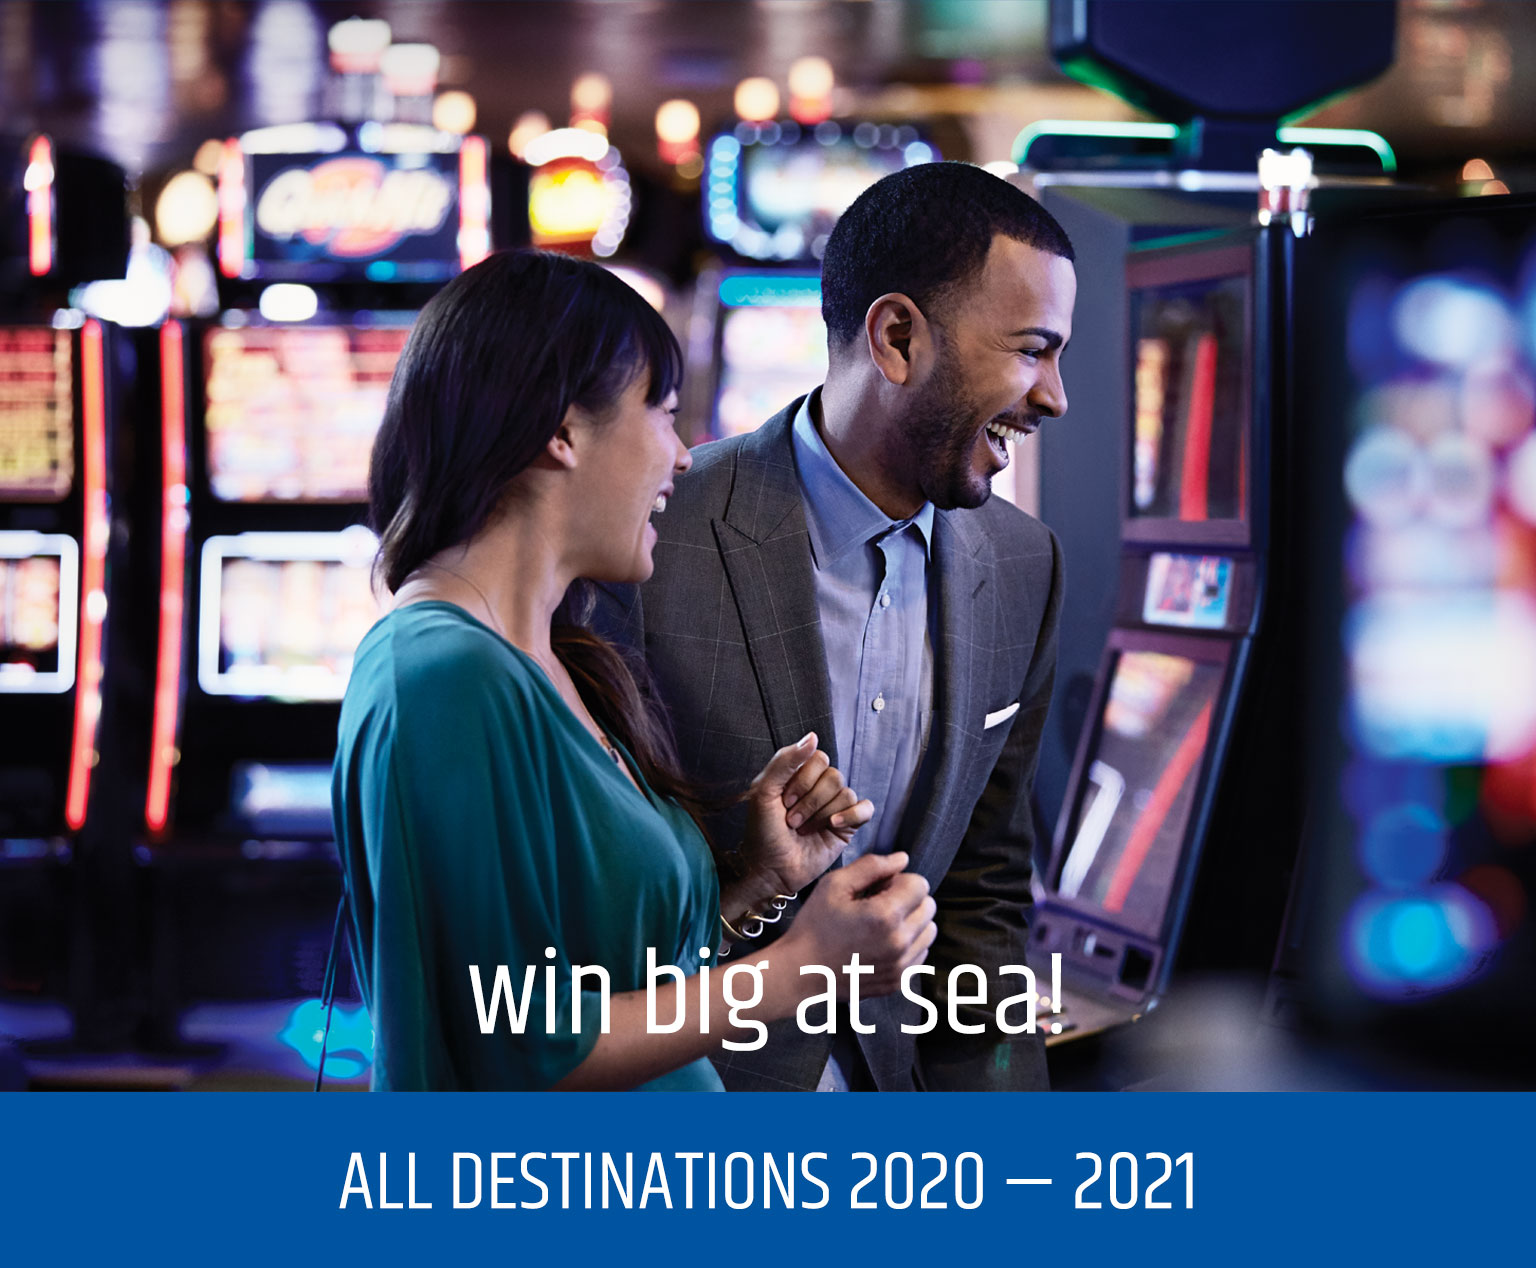 Win big at sea! All destinations 2020-2021